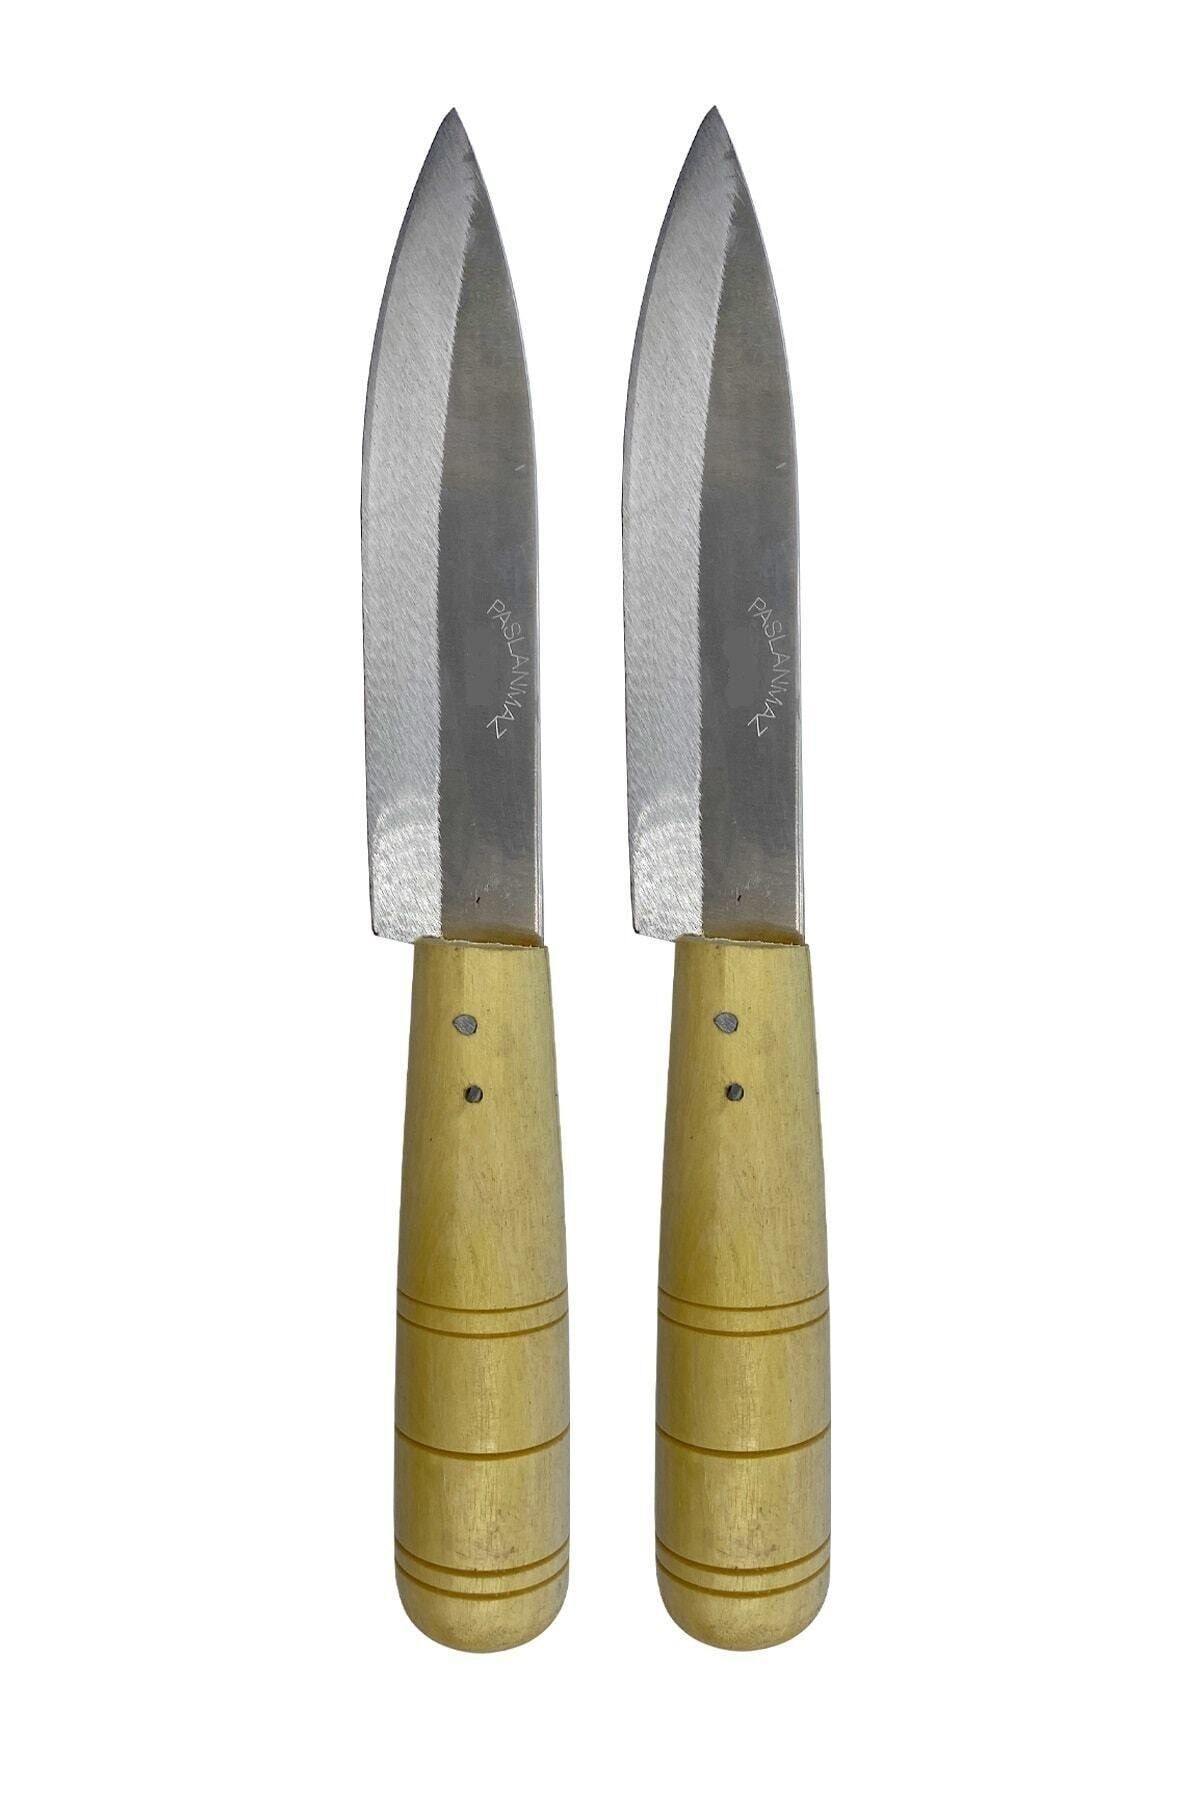 GÜZELYÜZ AVM Antakya Bıçağı Naim Bıçak Ahşap Saplı Mutfak Bıçağı Büyük Boy 2 Adet 26cm Keskin Kaliteli 1.sınıf